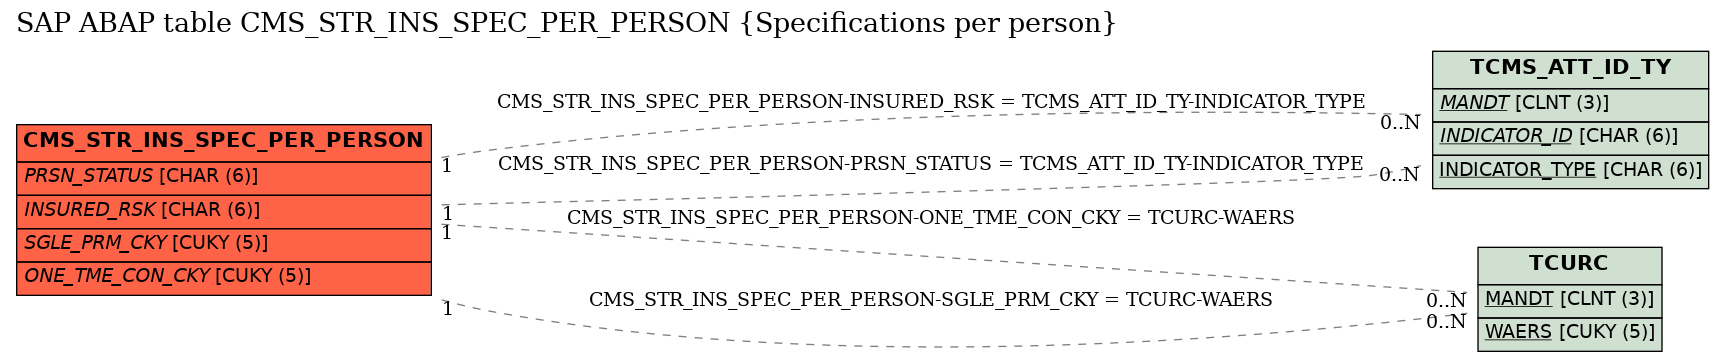 E-R Diagram for table CMS_STR_INS_SPEC_PER_PERSON (Specifications per person)